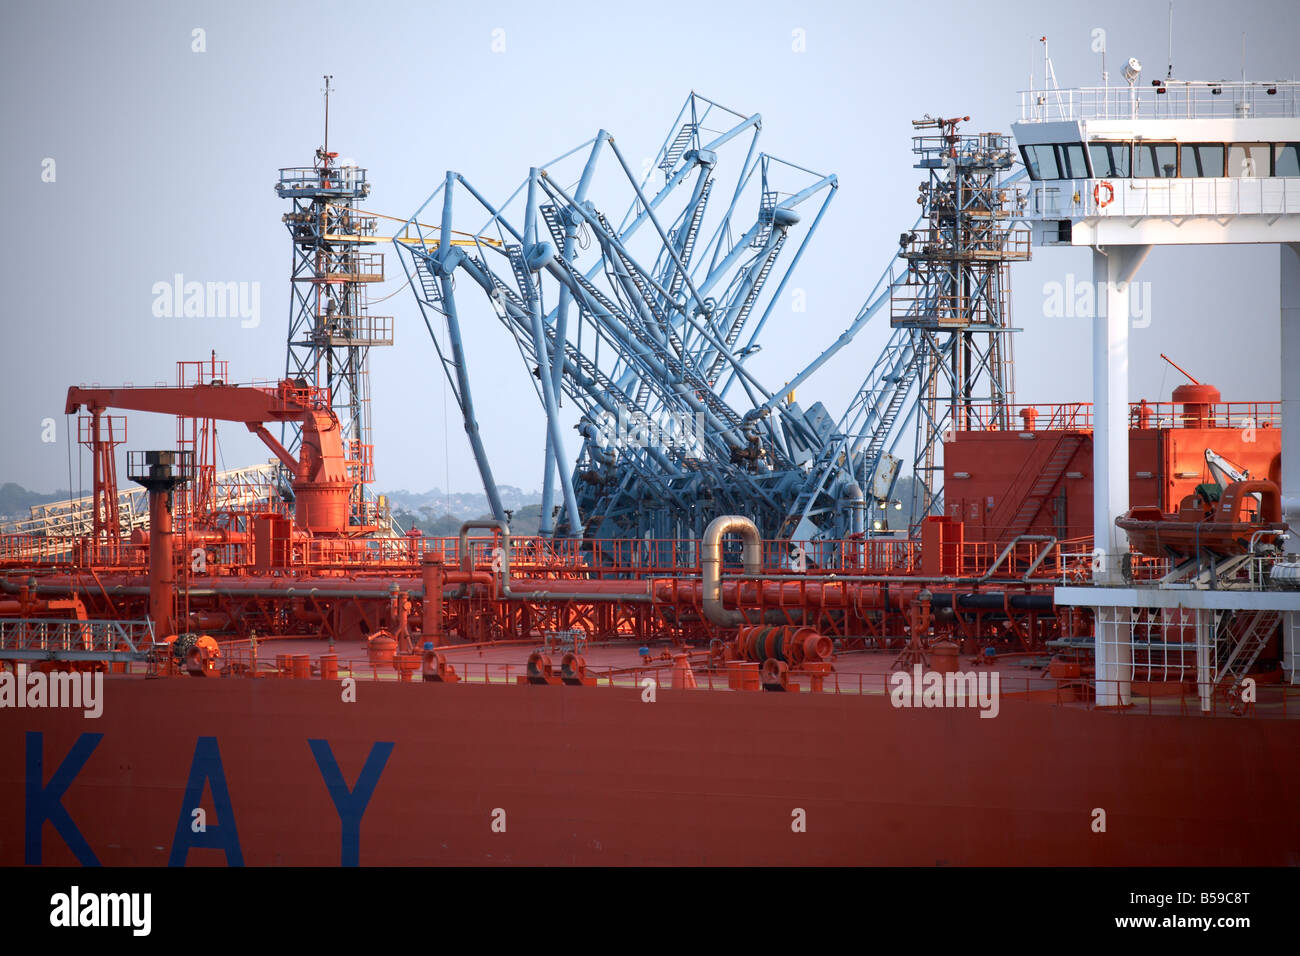 Abstraktes Bild von Rohren auf Stena Alexita Handelsschiff Schiffsdeck am Southampton Water Fawley Raffinerie terminal Hafen angedockt. Stockfoto